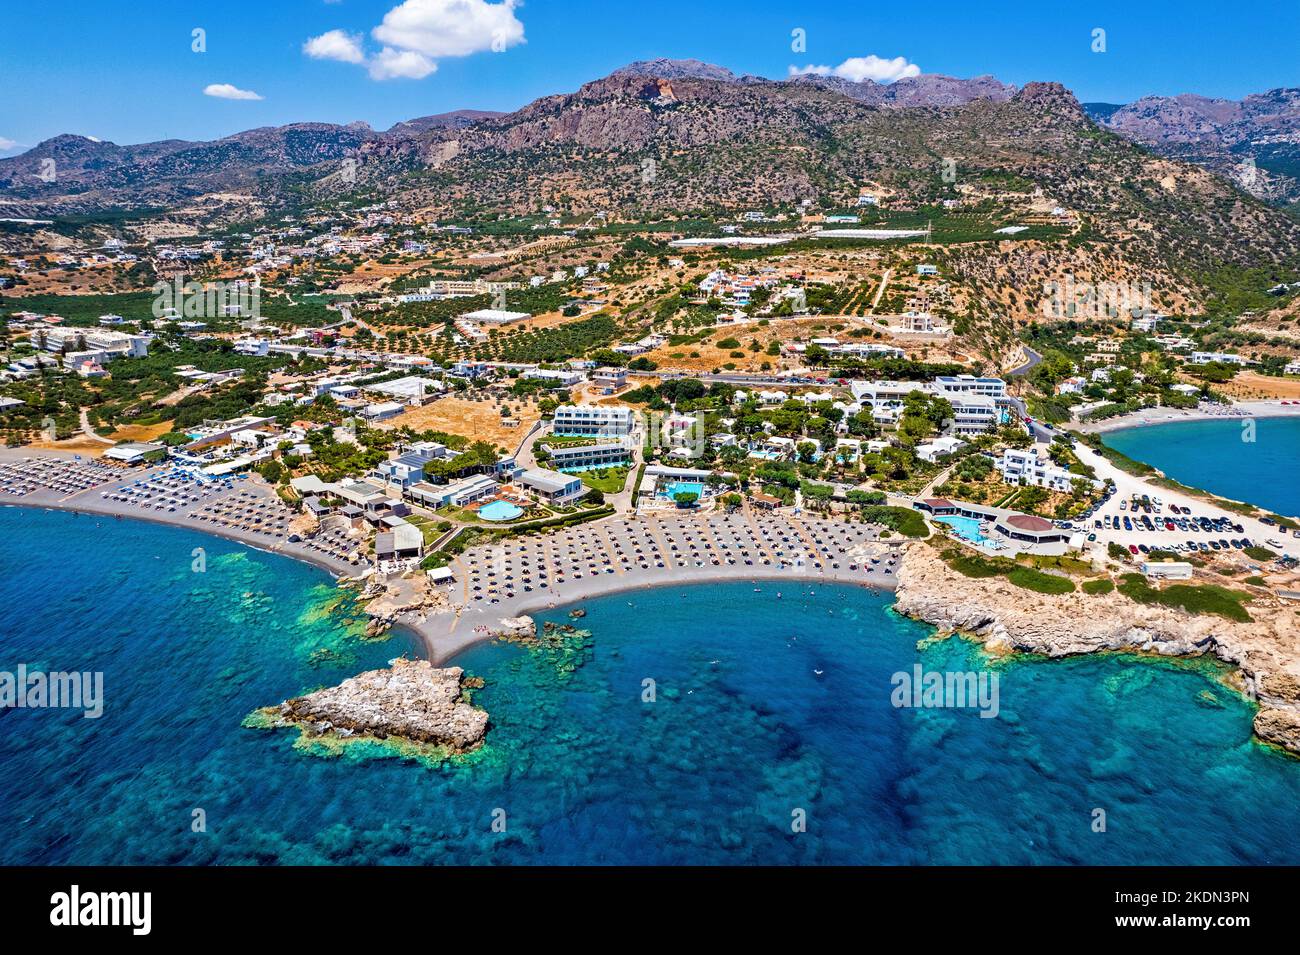 Vue aérienne (drone) de la plage de la baie de Kakkos (drapeau bleu), entre les villages de Ferma et Koutsounari, Ierapetral, Lassithi, Crète, Grèce. Banque D'Images